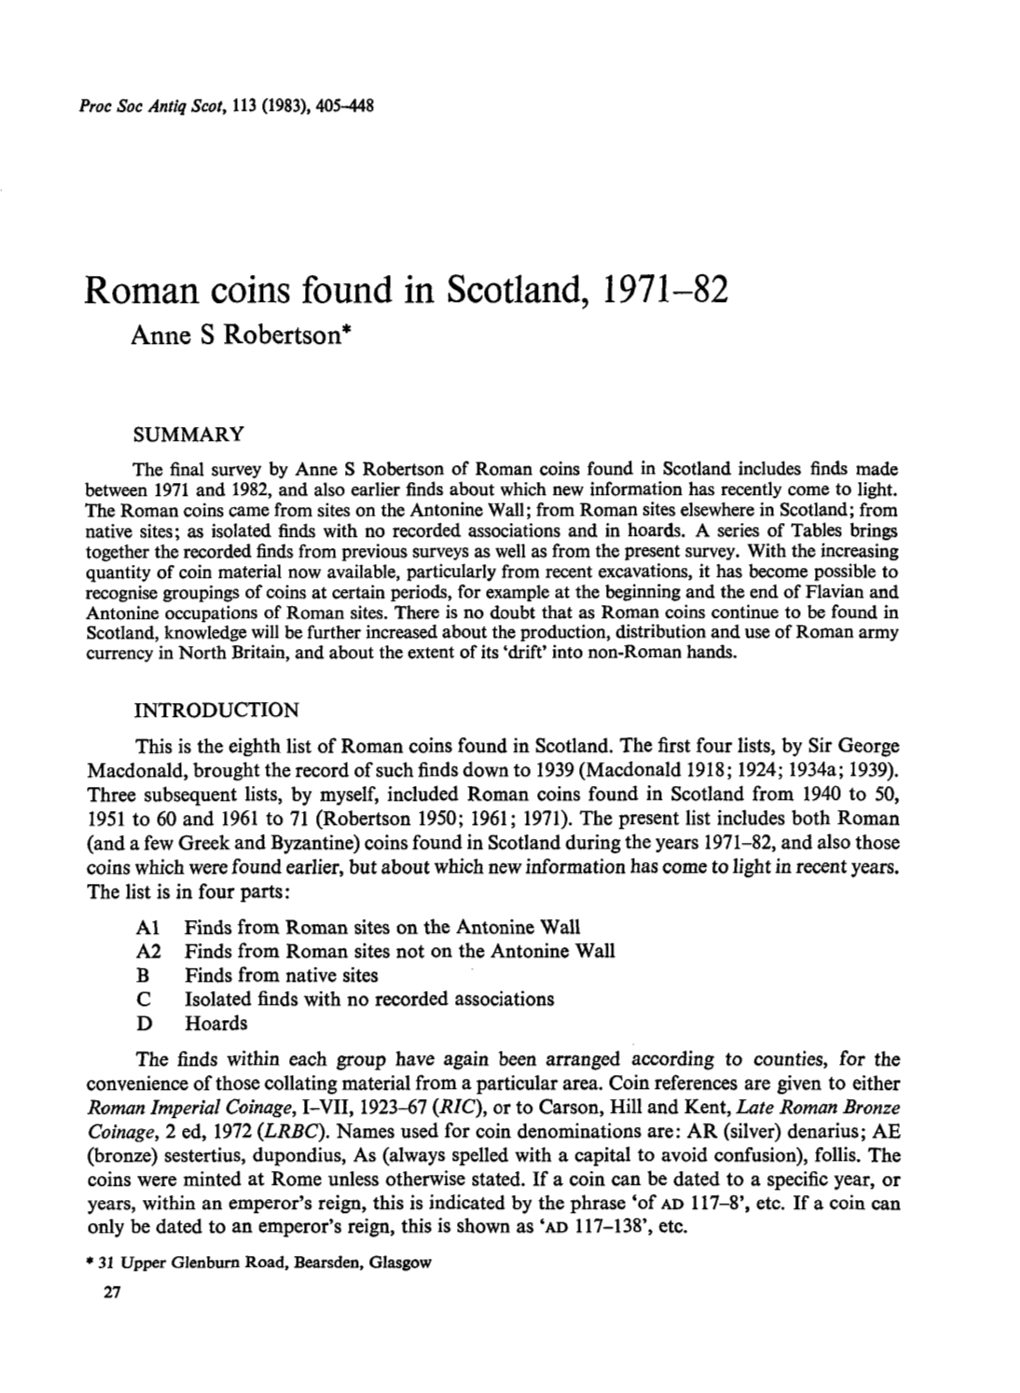 Roman Coins Found in Scotland, 1971-82